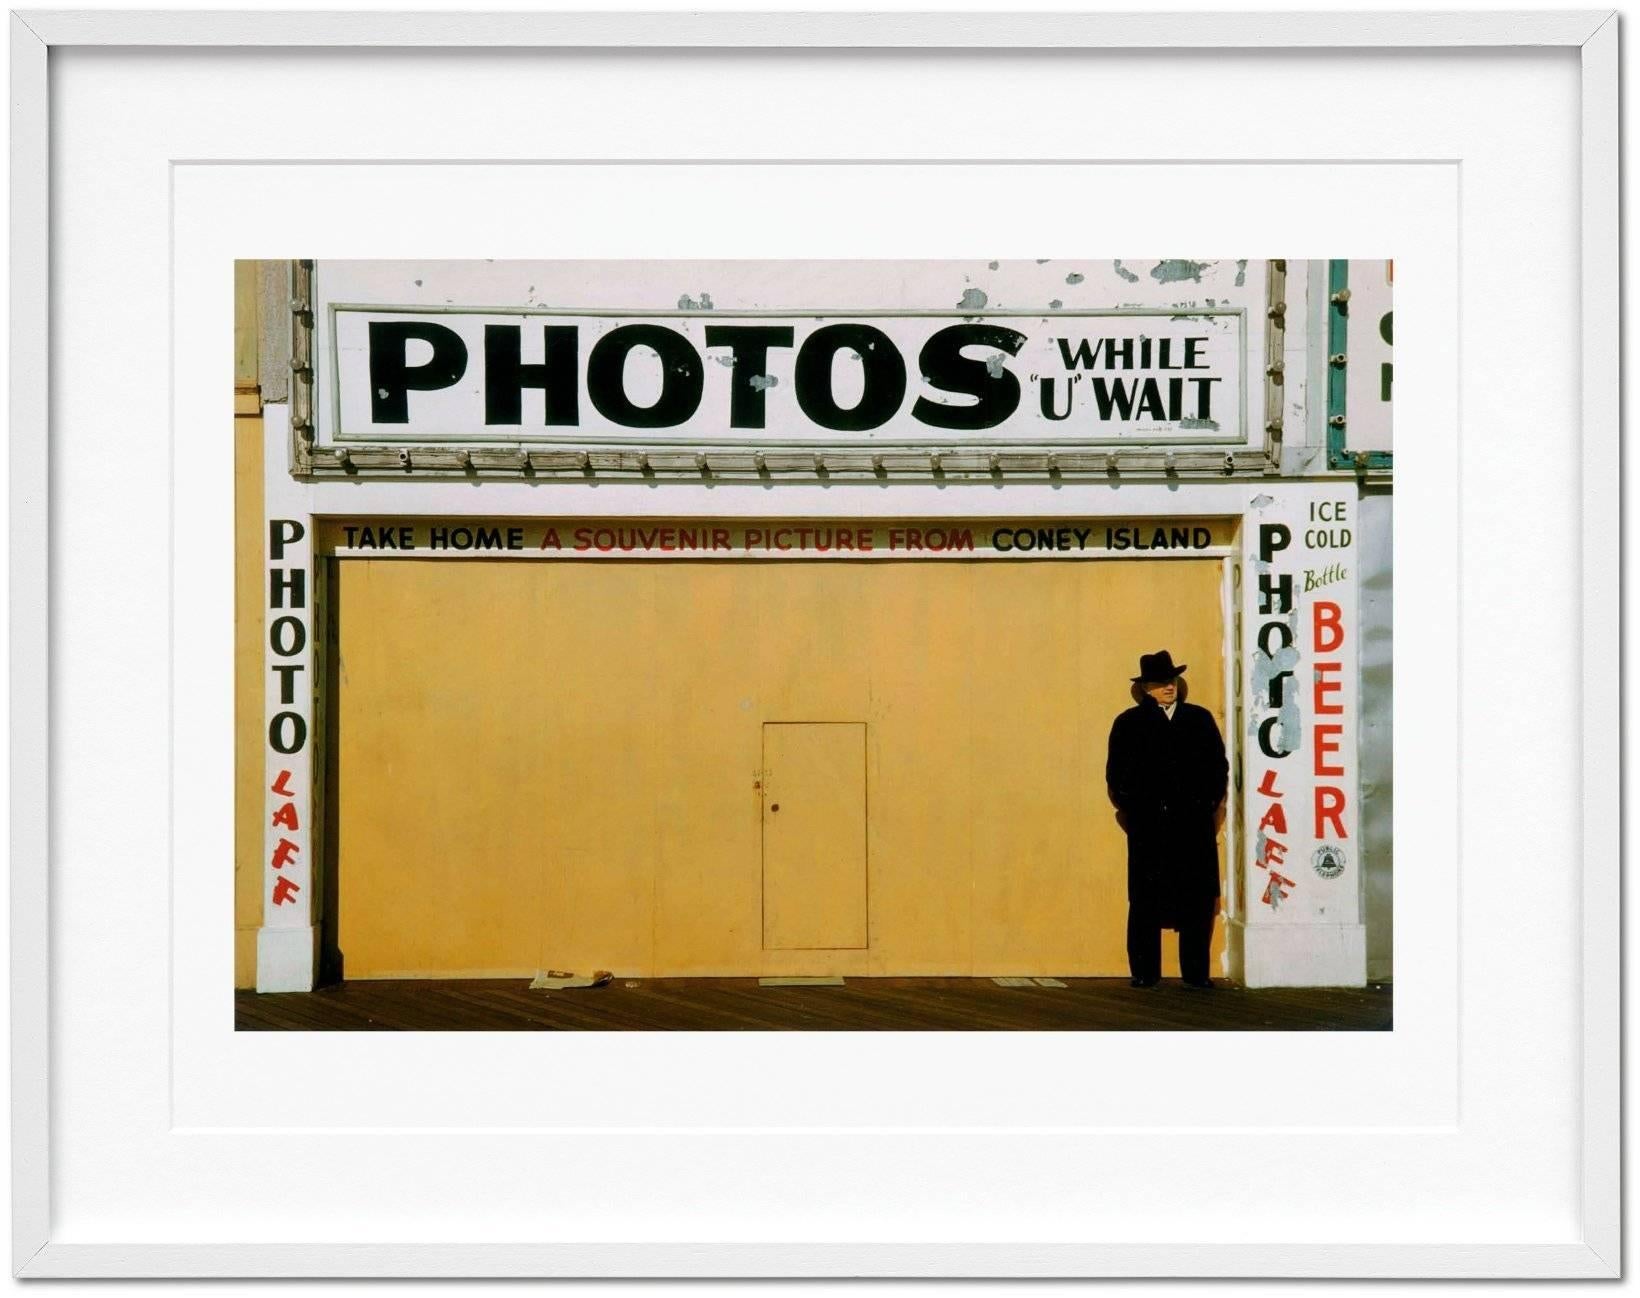 Eine stattliche Kunstedition, die die erste große Karriere-Restrospektive von Marvin E. Newman präsentiert, mit rund 170 Bildern sowie dem signierten fotografischen Abzug Coney Island, 1953, einem der wichtigsten Bilder in Newmans